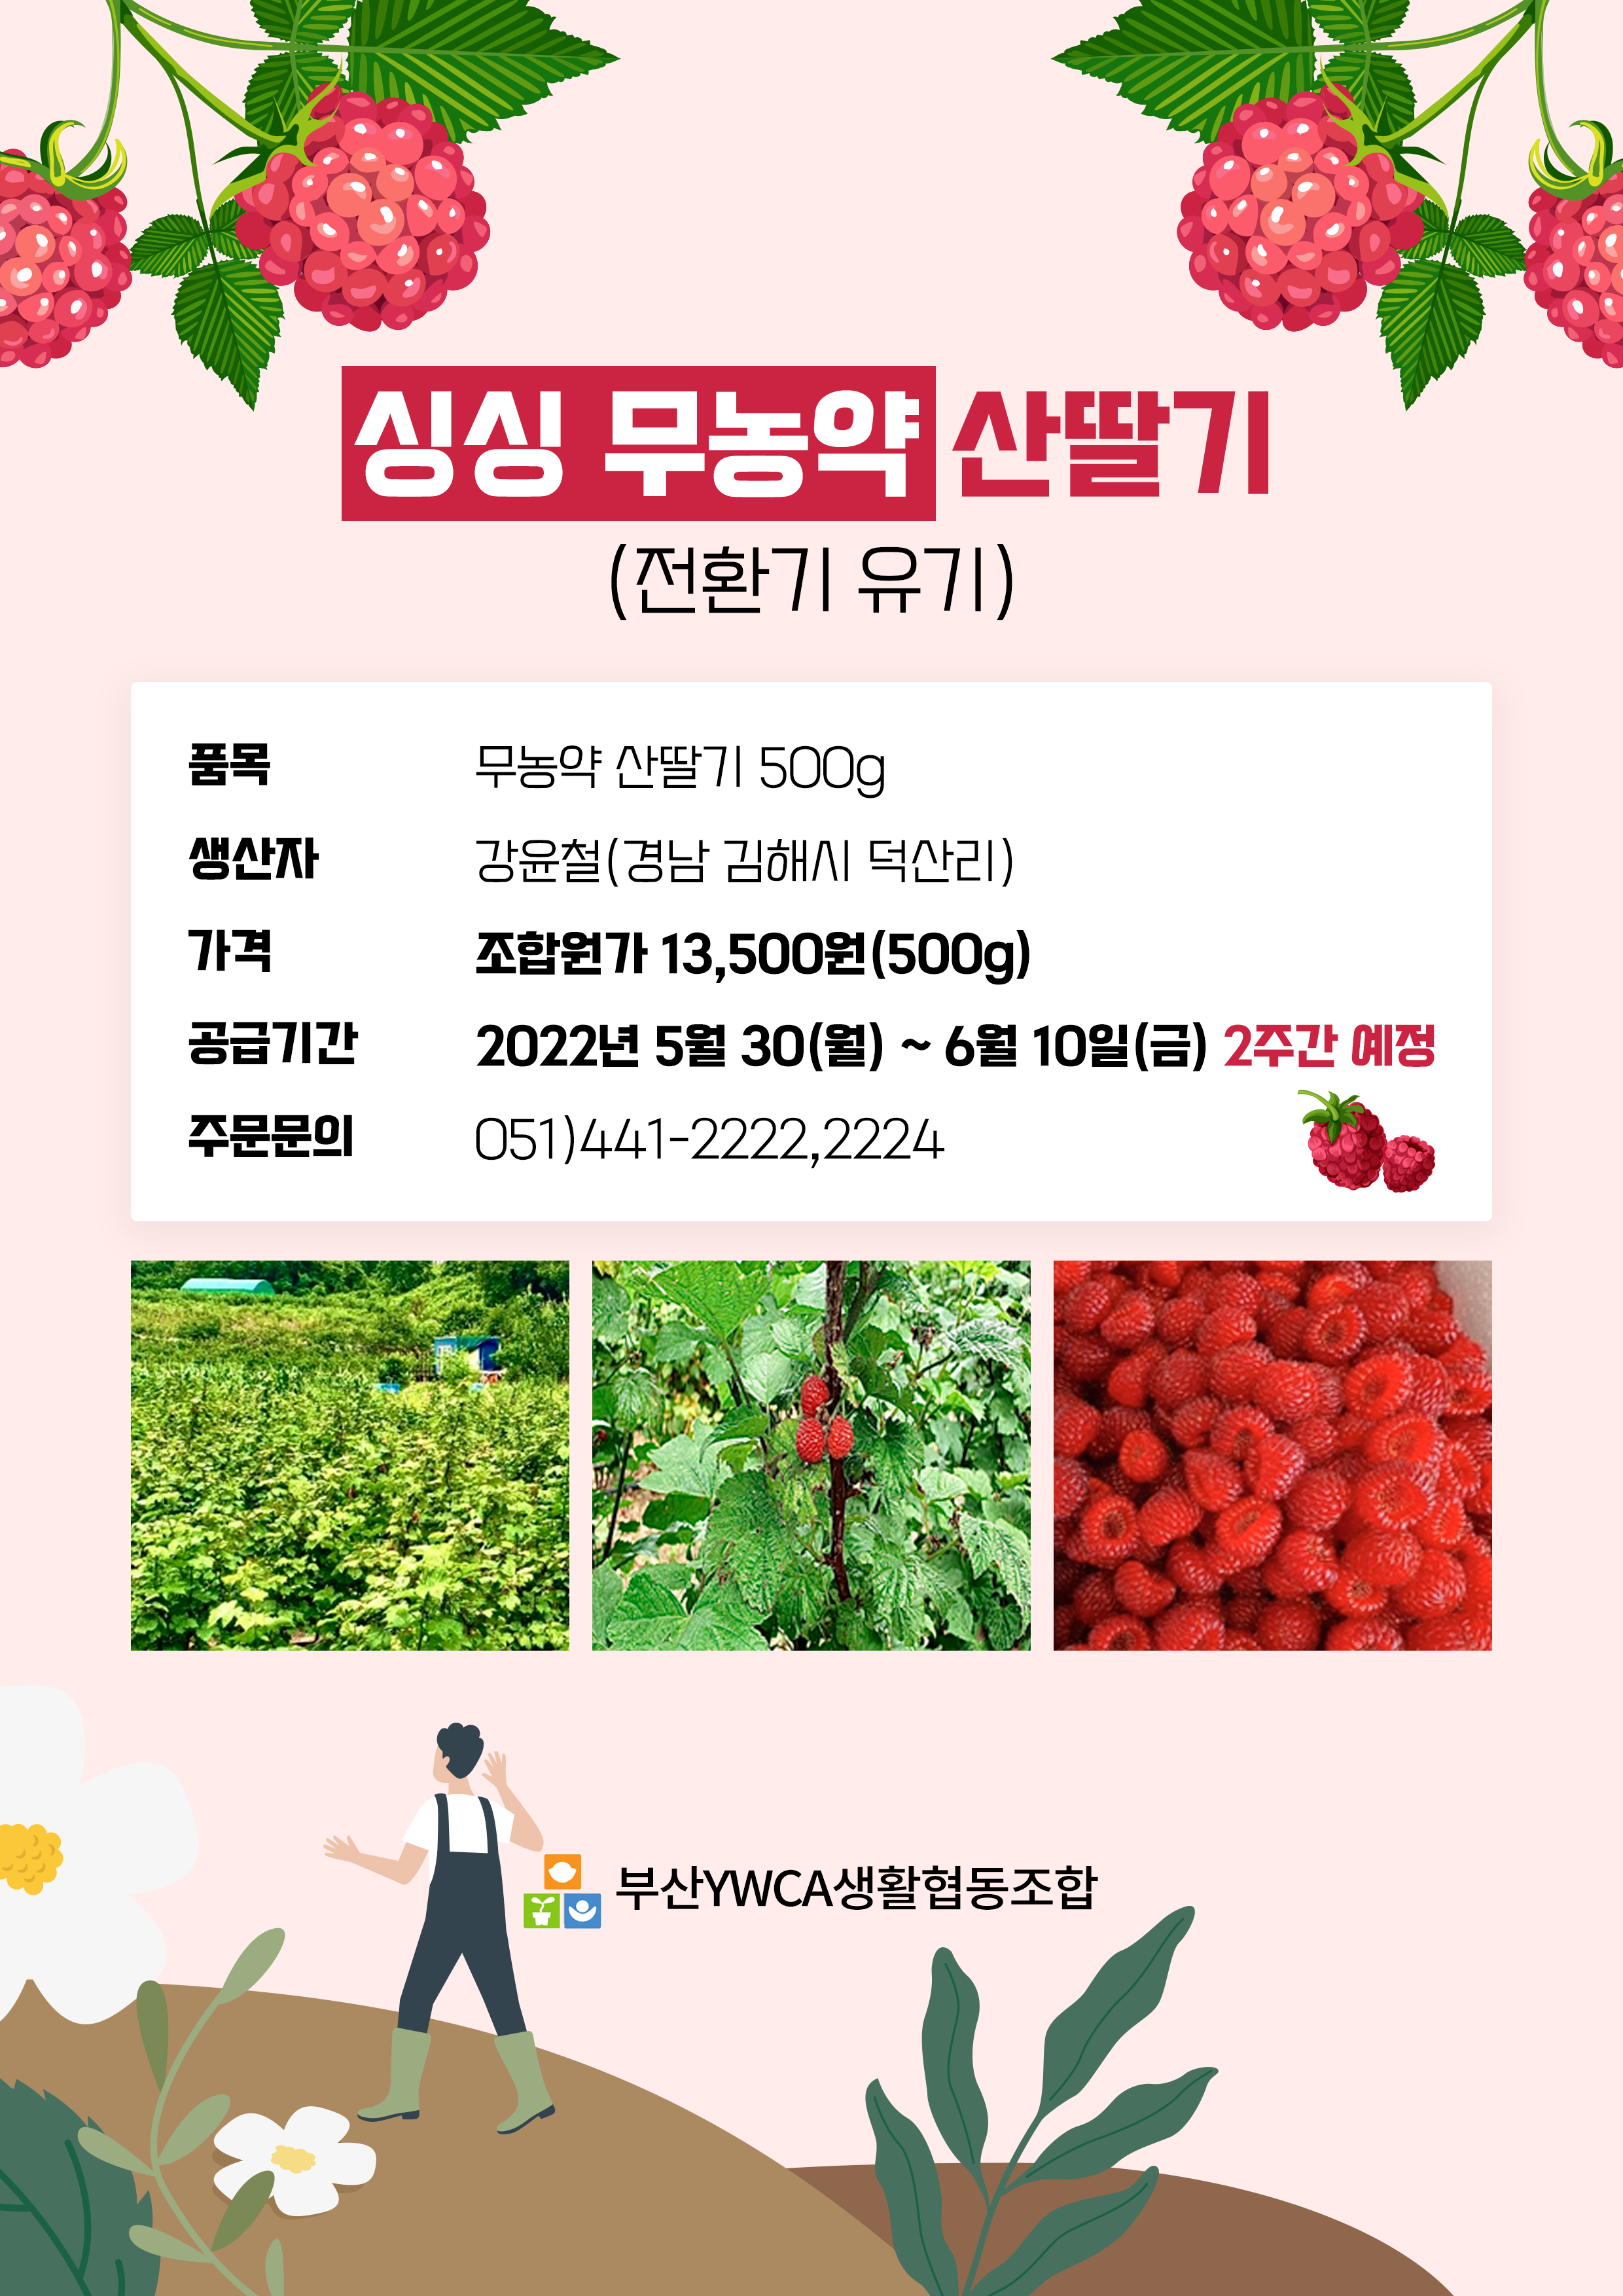 생활협동조합 – 싱싱 무농약 산딸기 공급